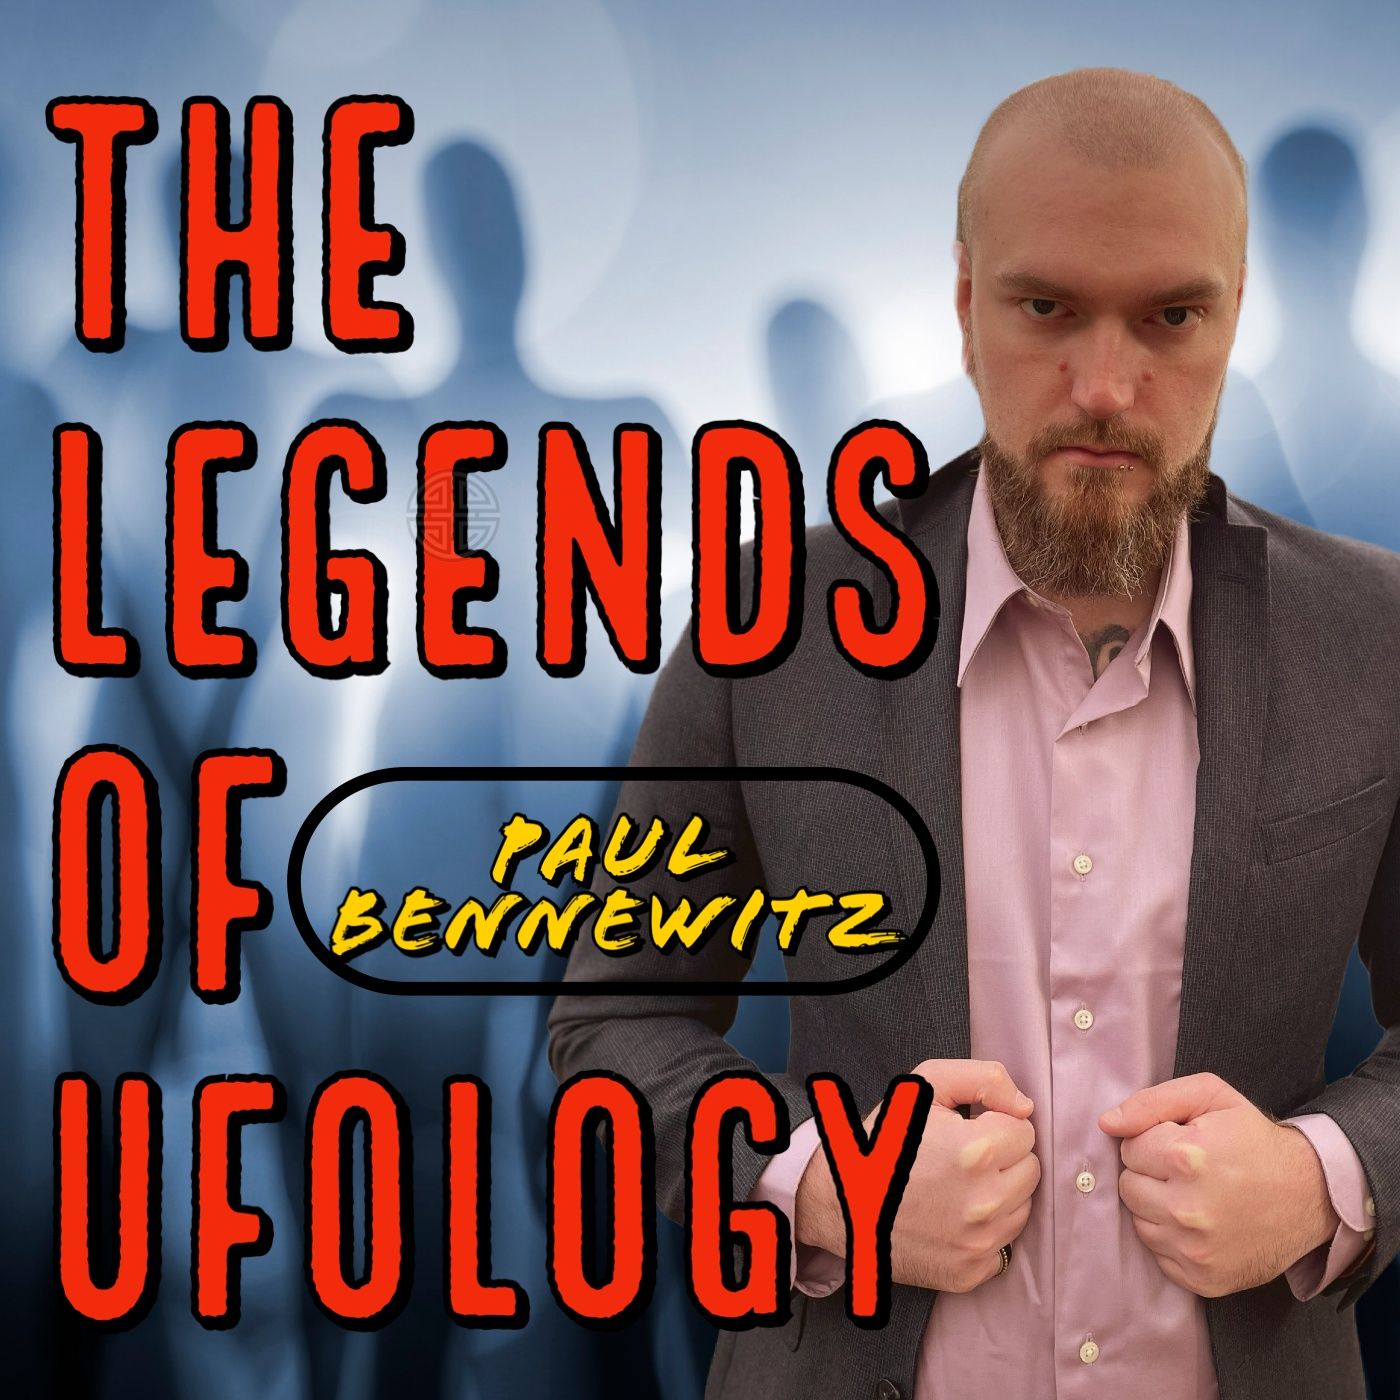 The Legends of Ufology - Paul Bennewitz